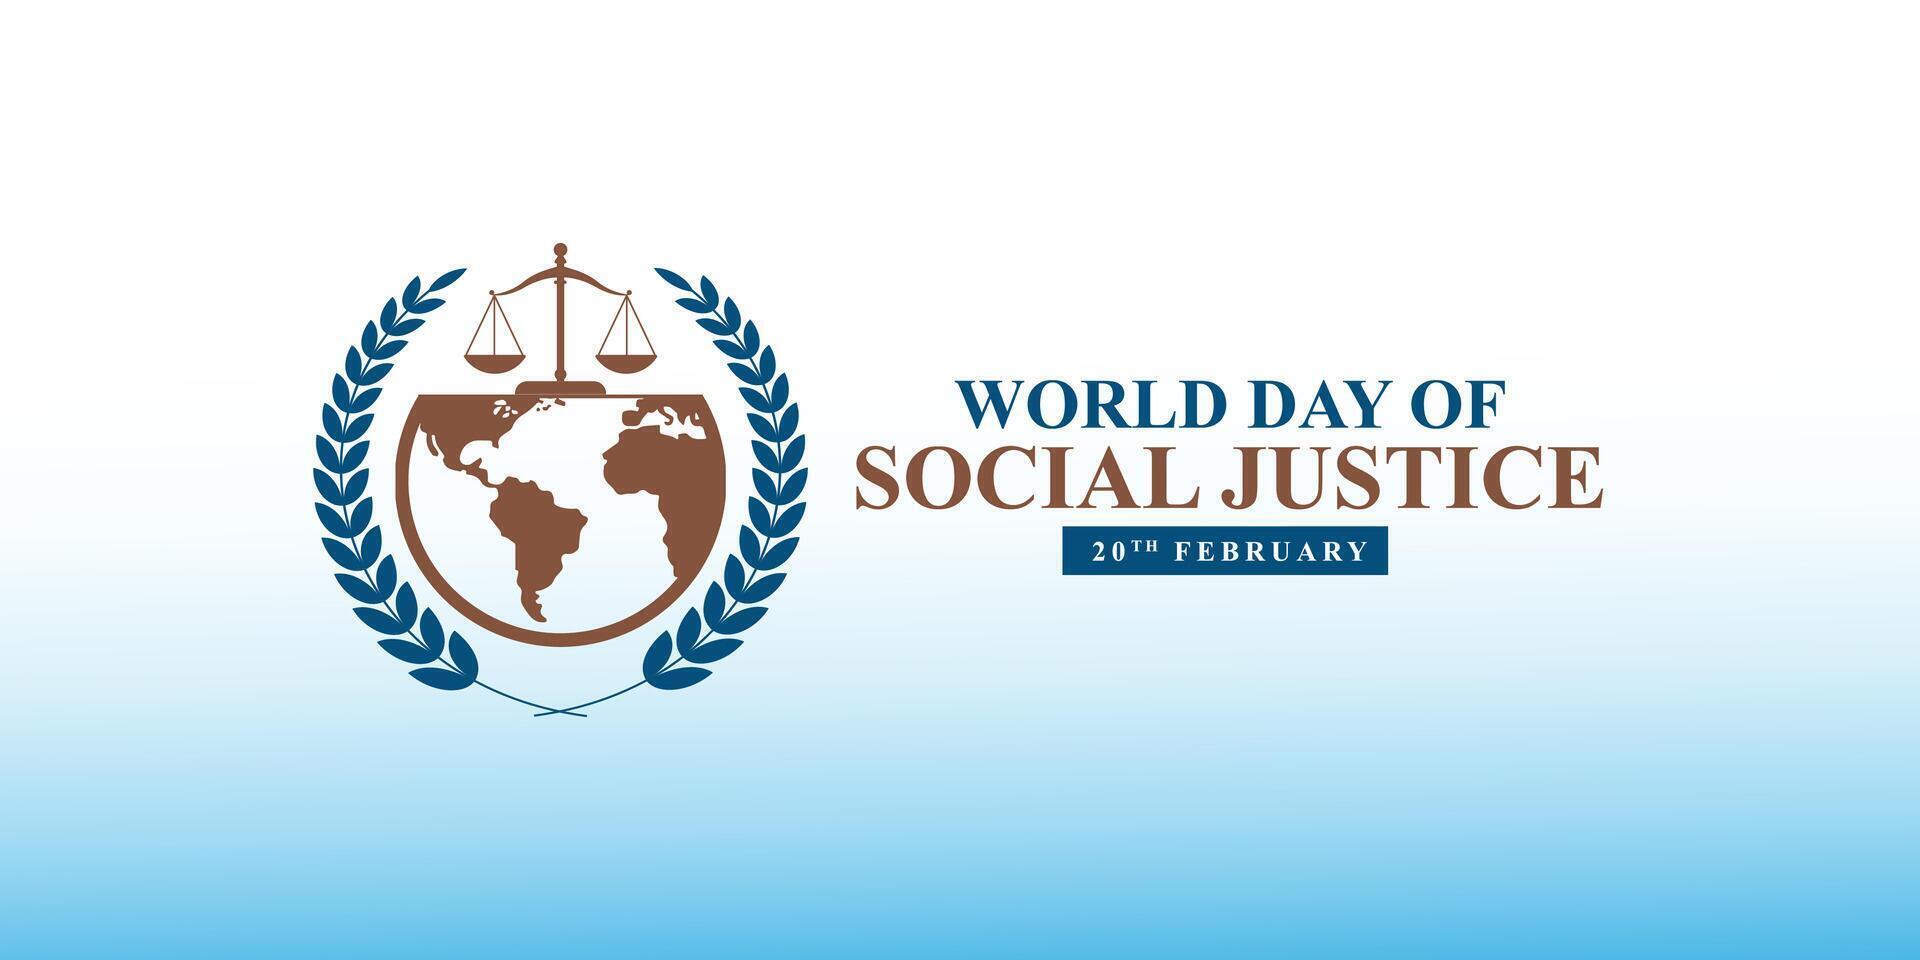 modifiable conception de monde social Justice journée à promouvoir social justice, comprenant efforts à adresse problèmes tel comme pauvreté, et le sexe égalité. international Justice journée. vecteur illustration